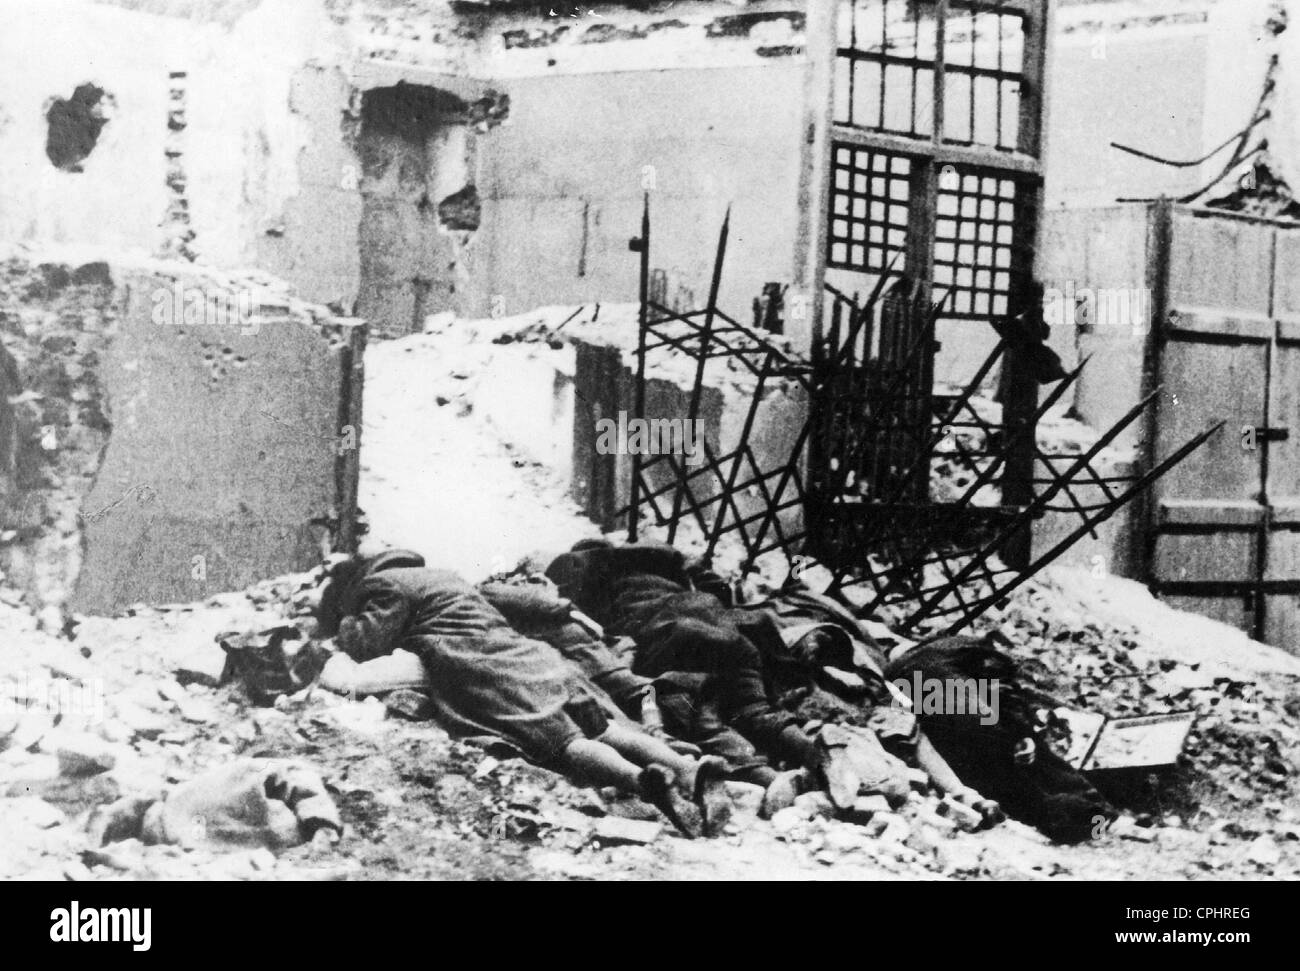 Des corps morts au cours de l'insurrection du Ghetto de Varsovie, 1943 (photo n/b) Banque D'Images